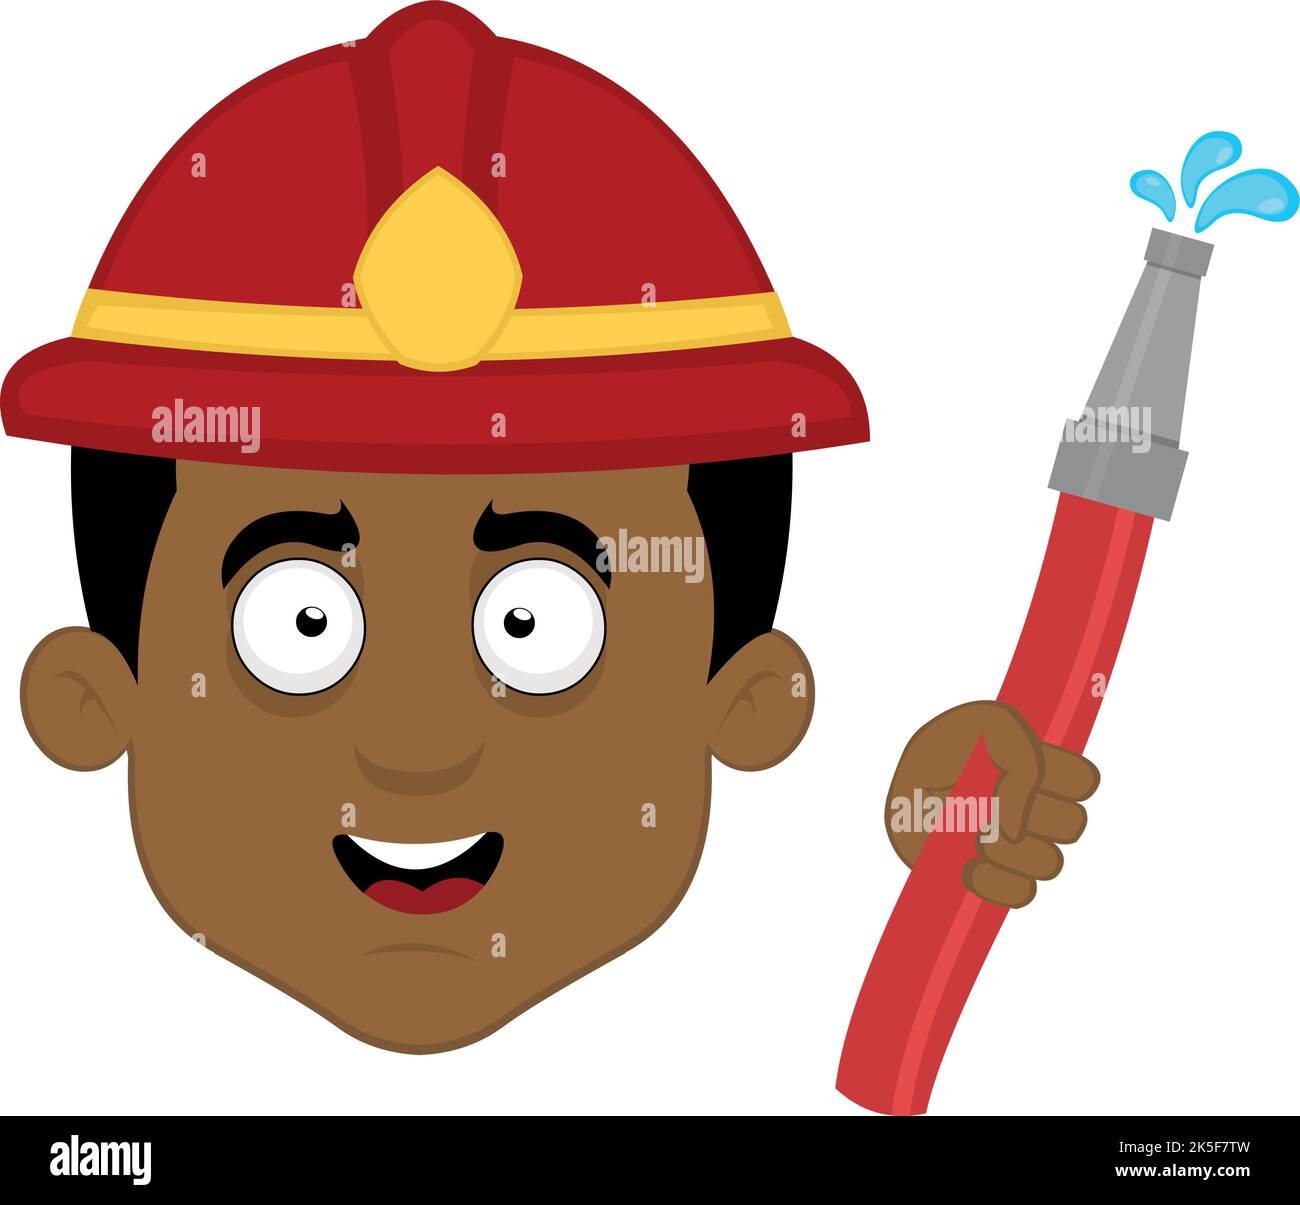 Vektor-Illustration des Gesichts eines Cartoon-Feuerwehrmann mit einem Helm und einem Schlauch in der Hand Stock Vektor